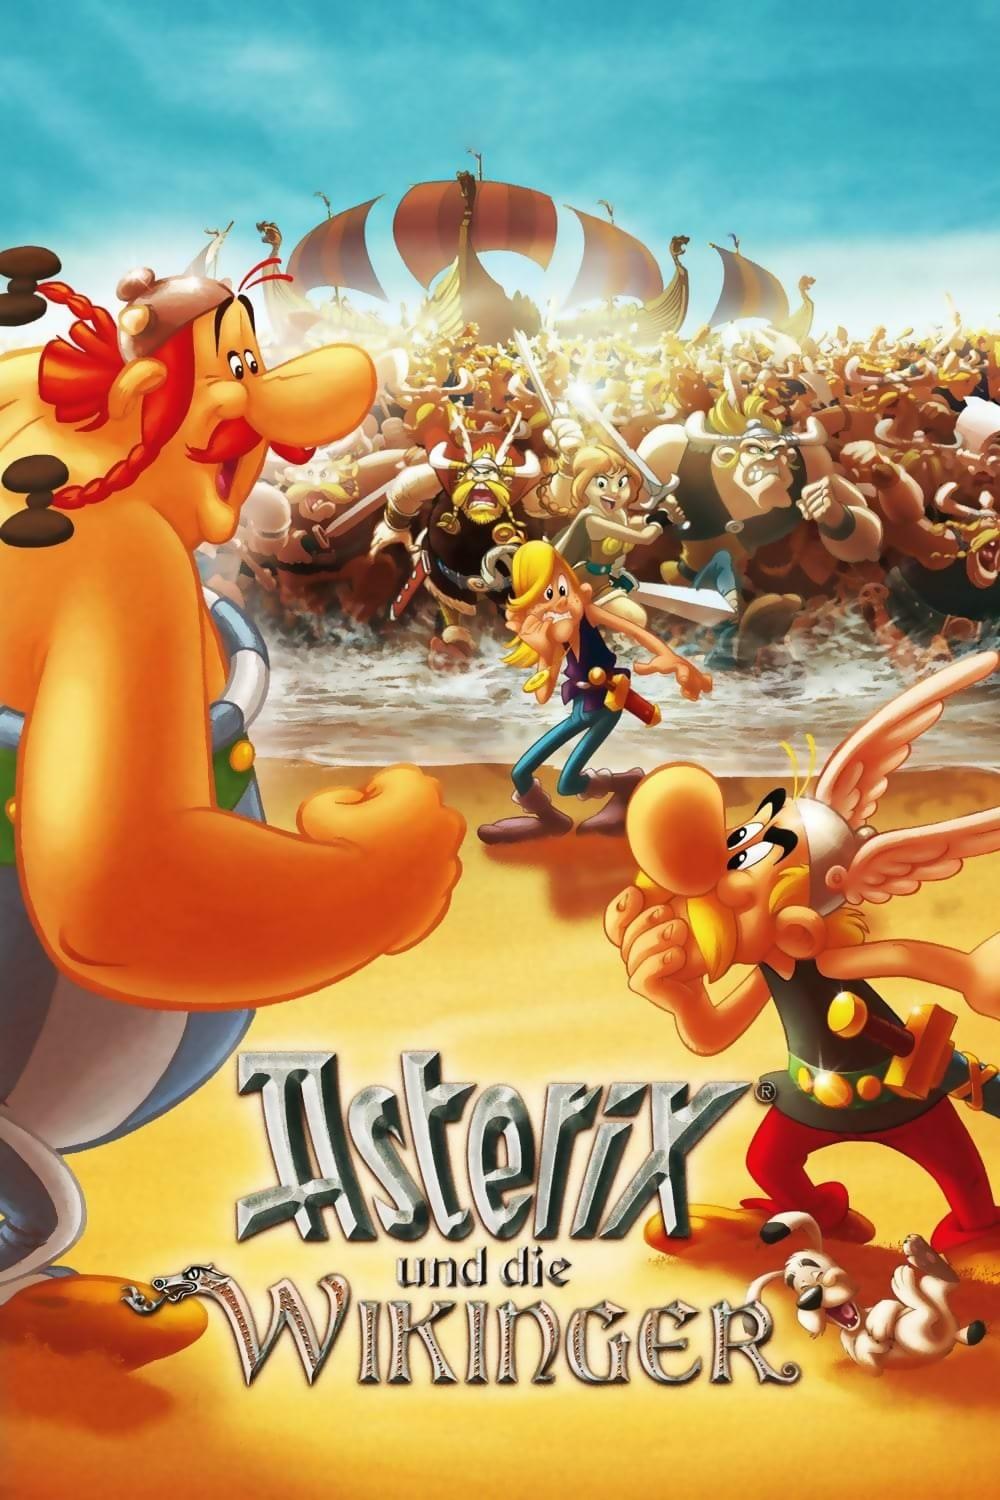 Asterix und die Wikinger poster